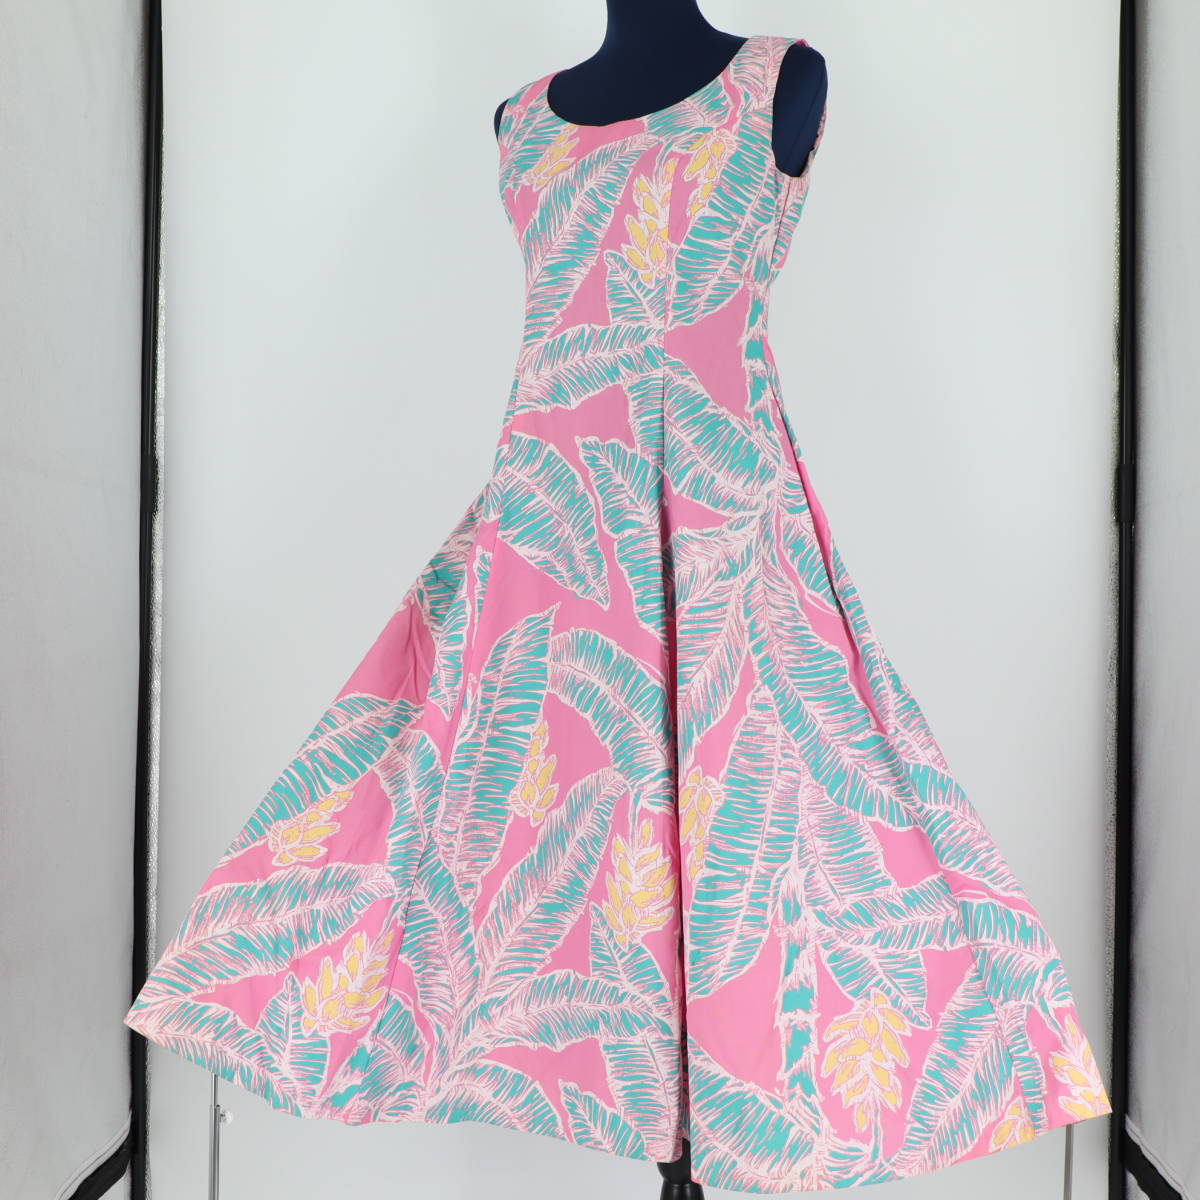 [ бесплатная доставка ][ хула для костюм сделано в Японии скетч способ принт ]ALOHASTANDARDS розовый чай leaf рисунок безрукавка One-piece платье прекрасный товар 